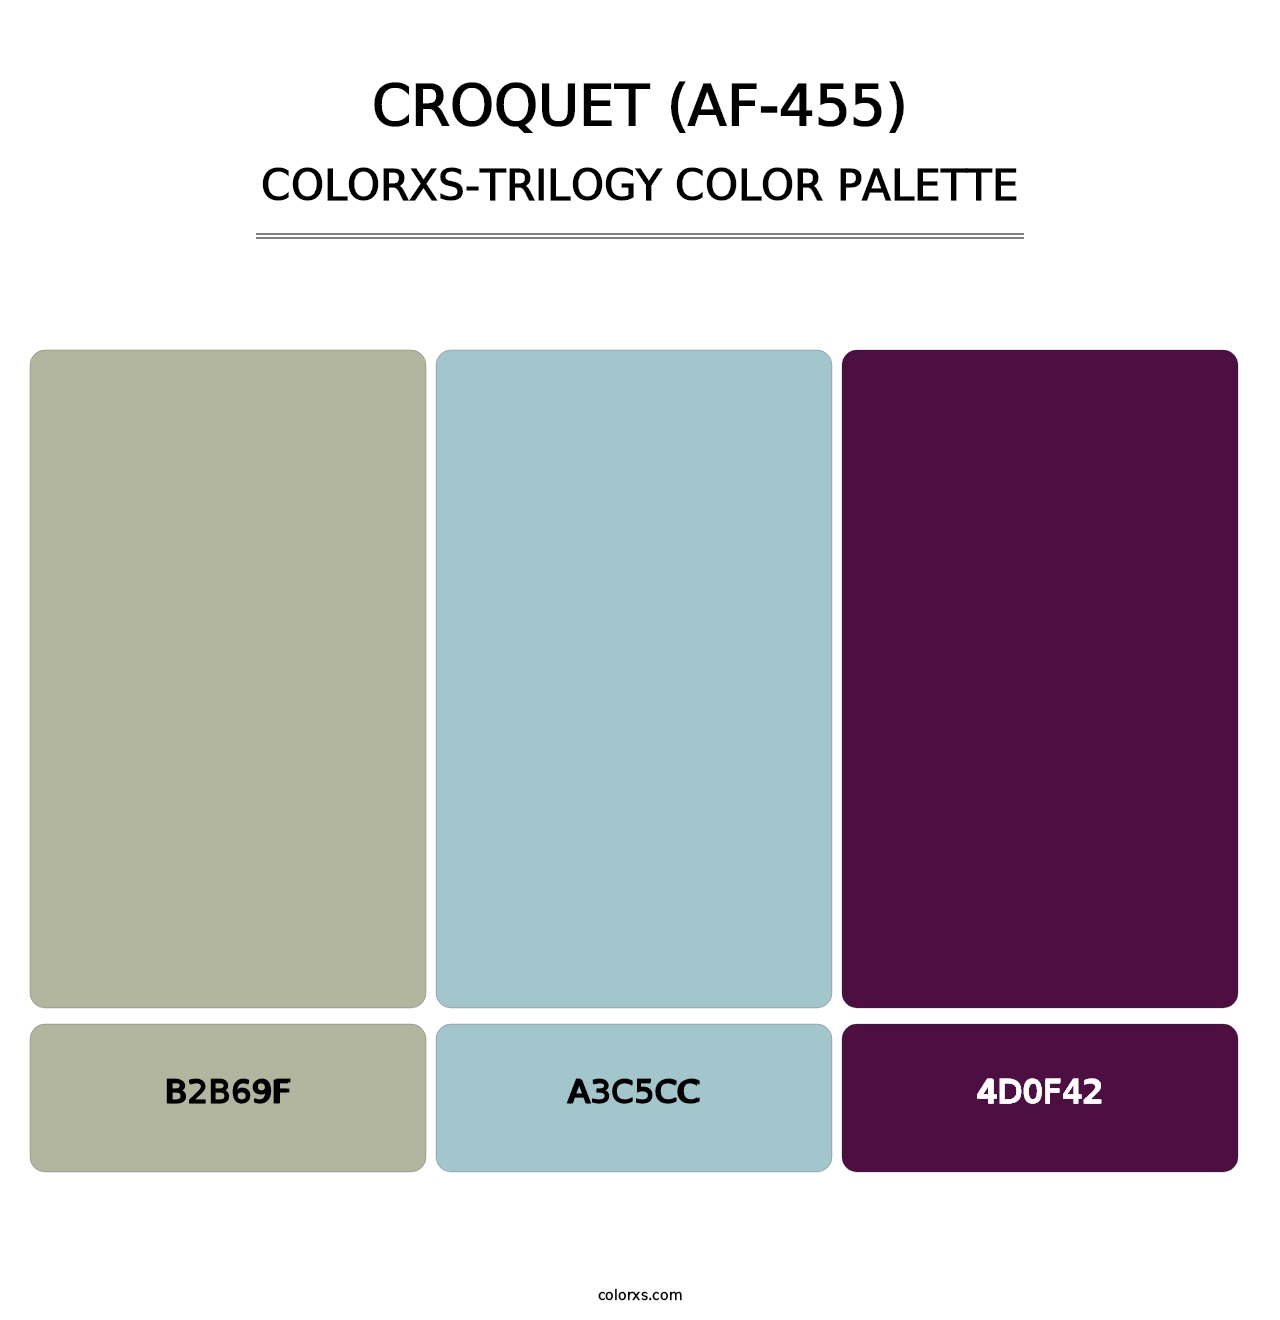 Croquet (AF-455) - Colorxs Trilogy Palette